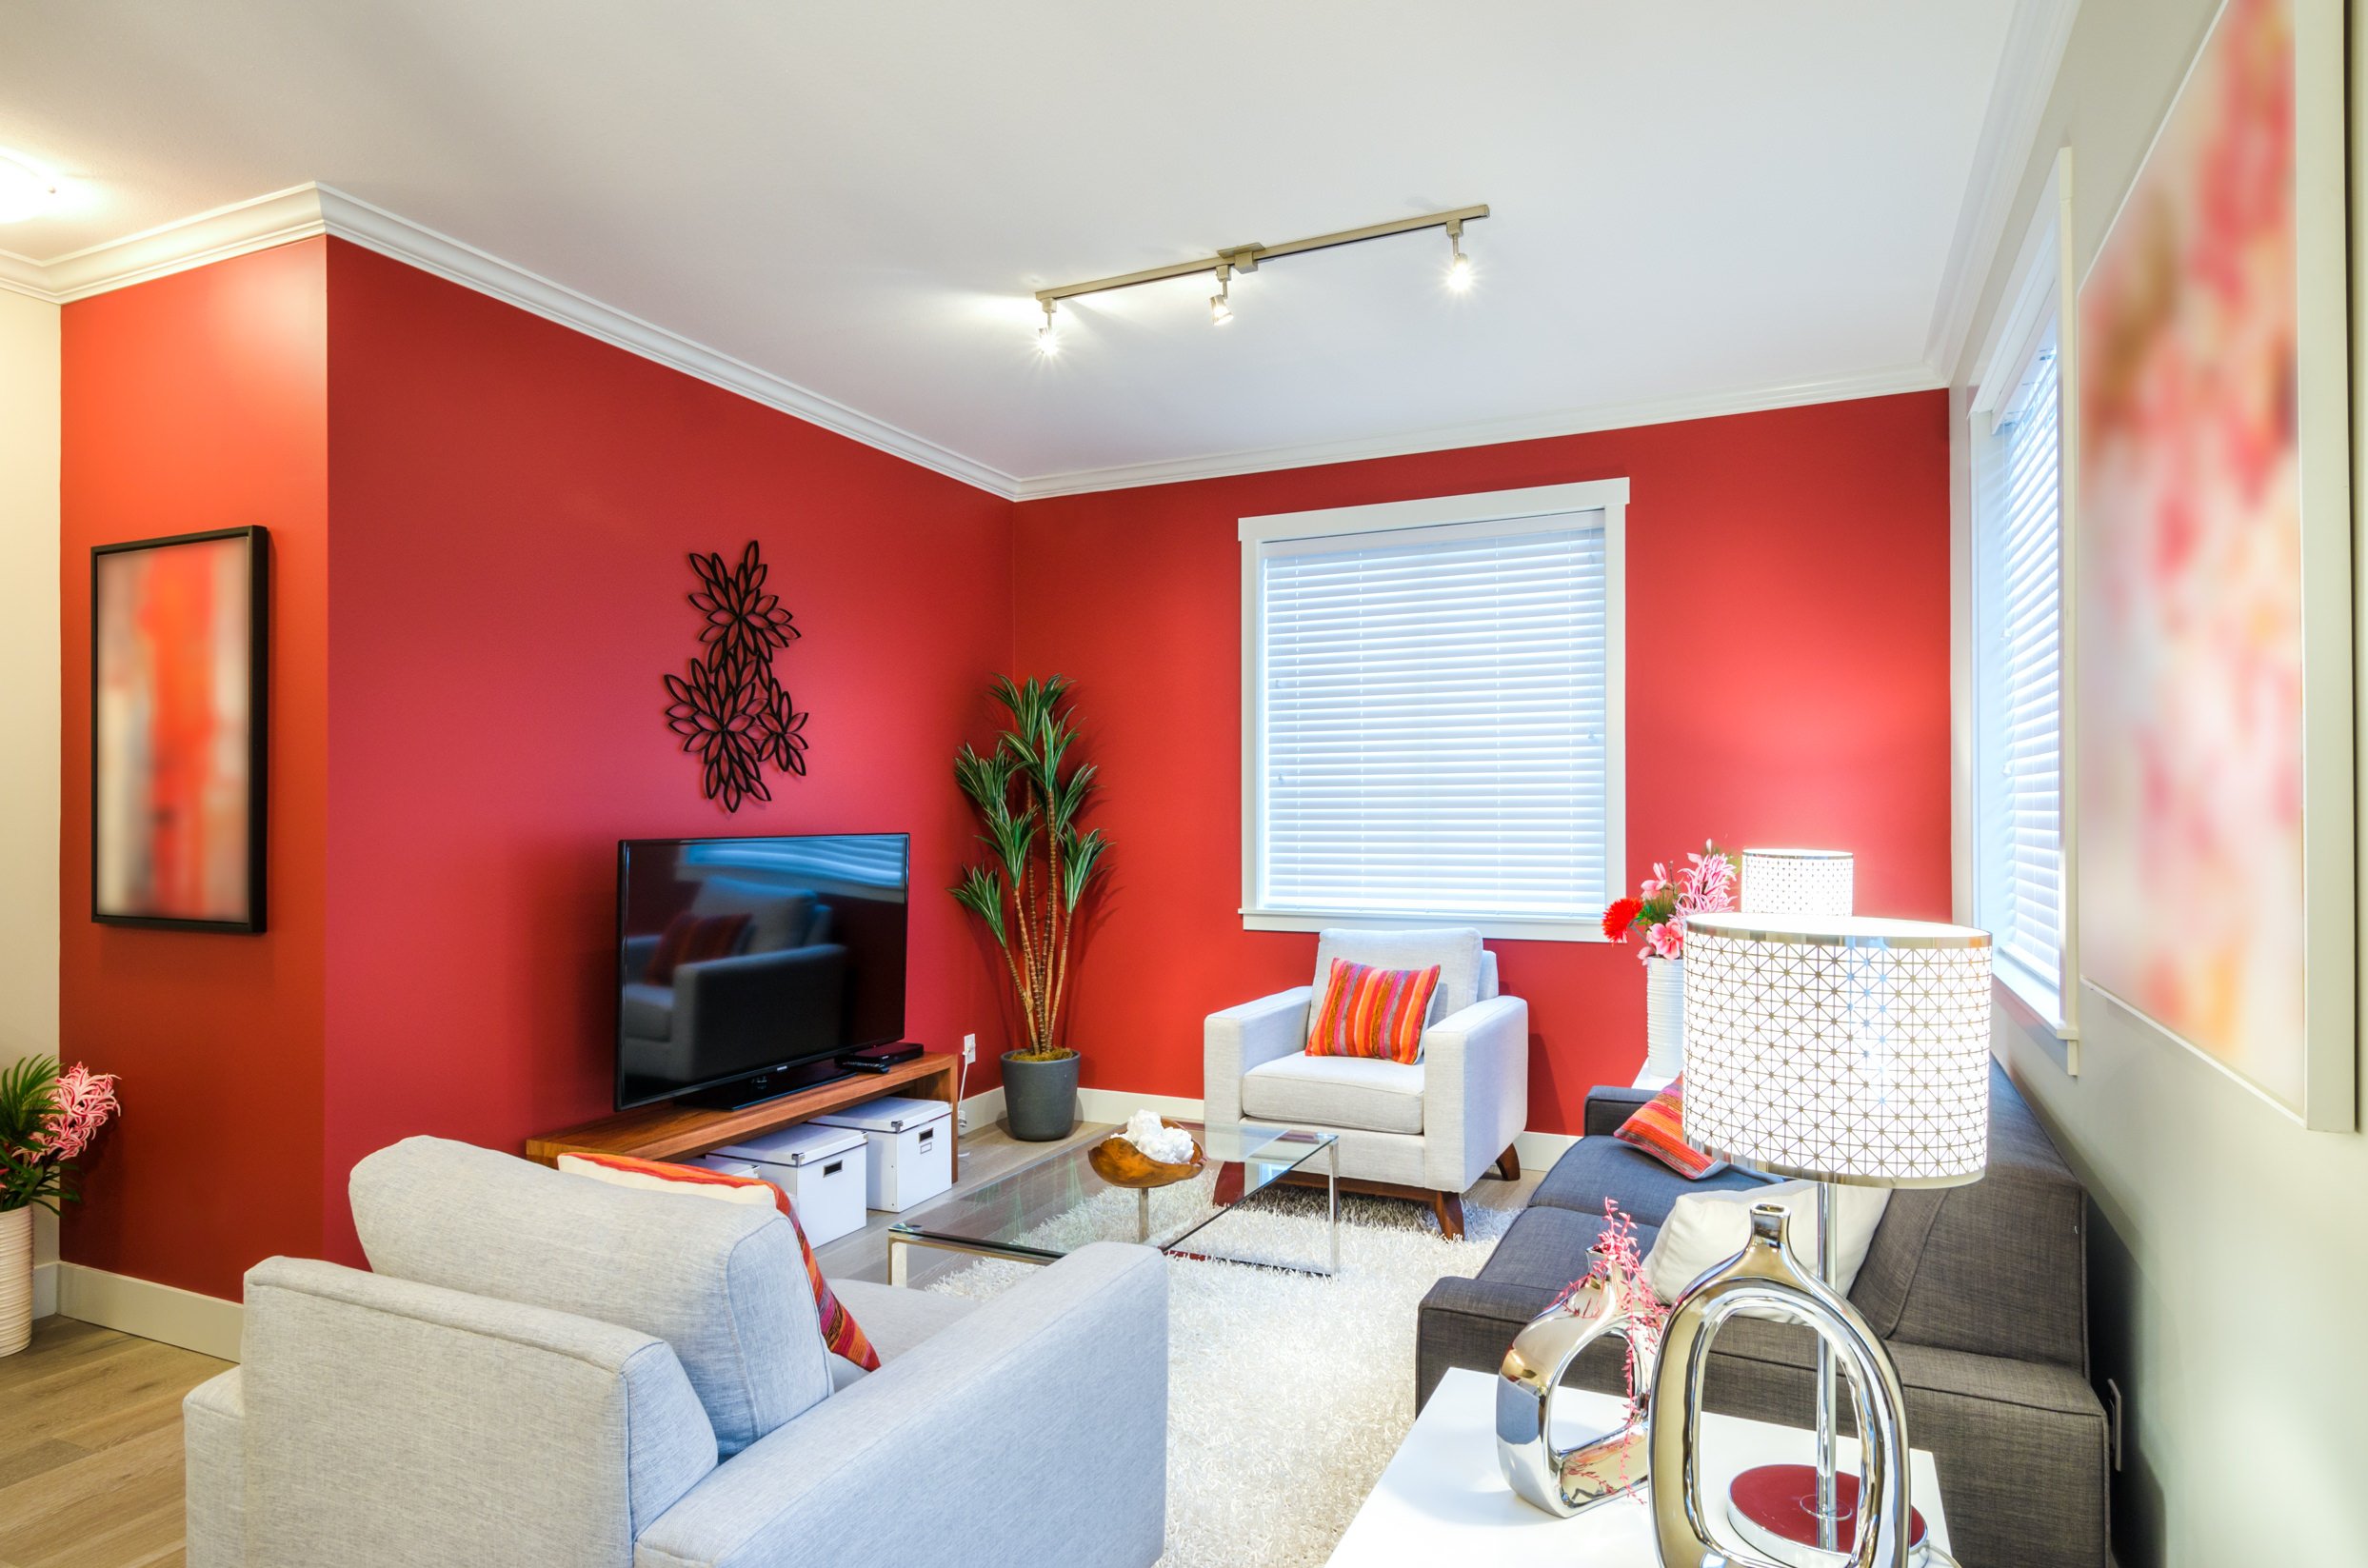 Современная внутренняя отделка: какой краской красить стены в квартире